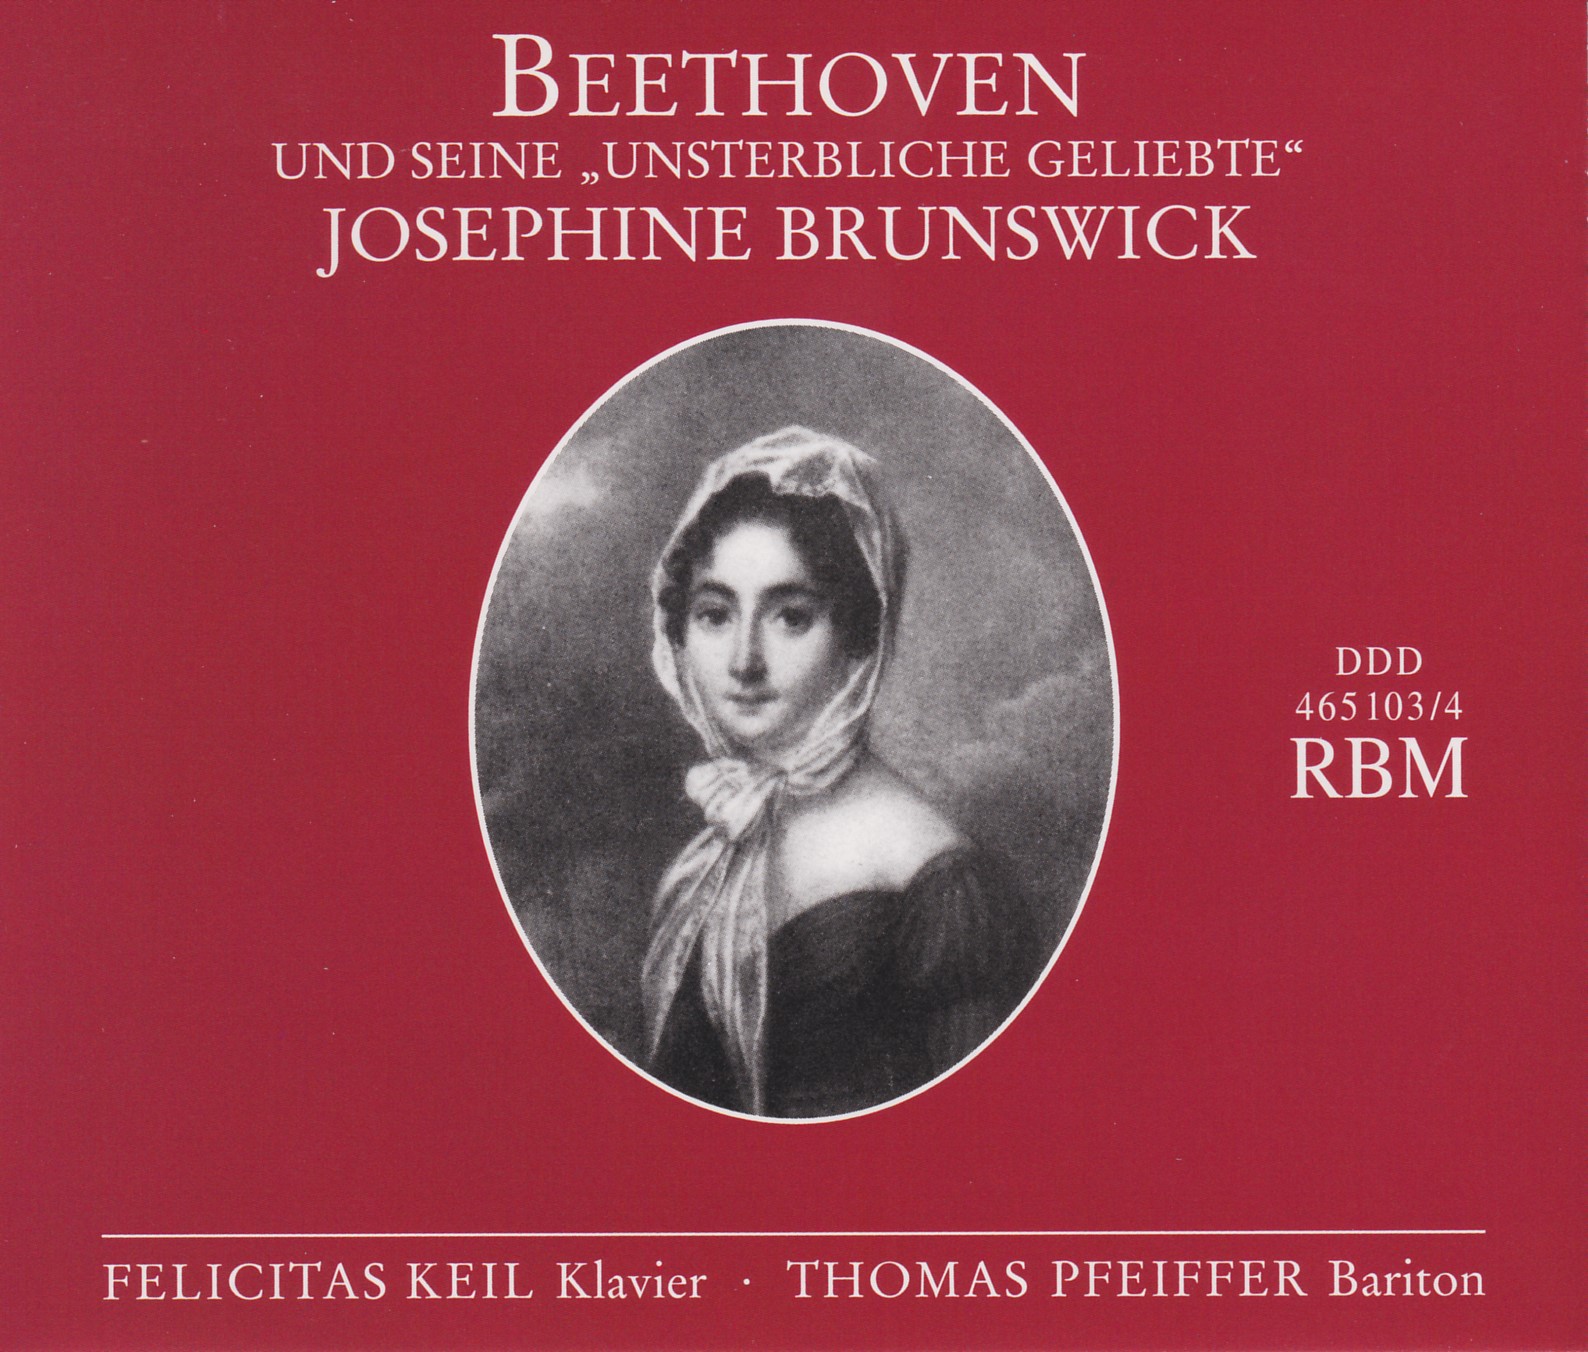 Beethoven und seine unsterbliche geliebte Josephine Brunswick